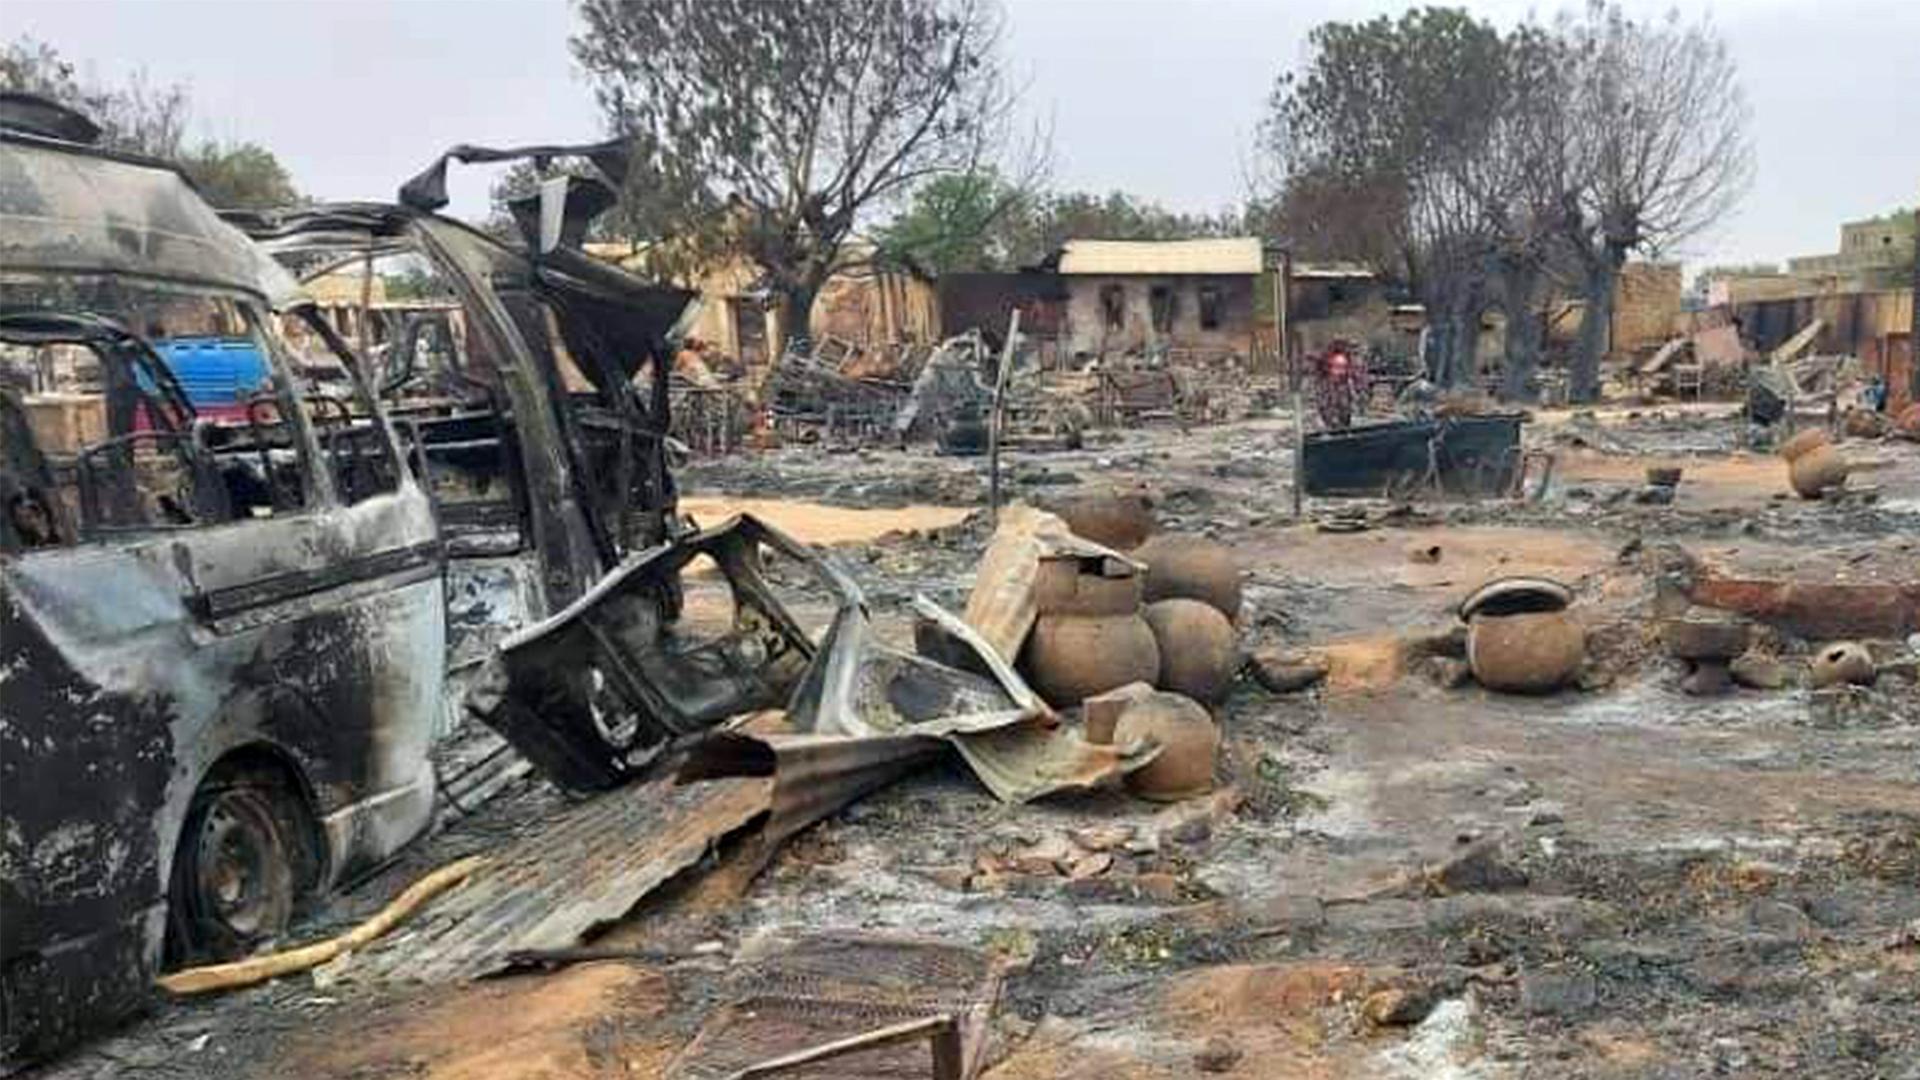 Ein ausgebranntes Auto steht auf einem völlig zerstörten ehemaligen Marktplatz in der Region Darfur im Sudan.